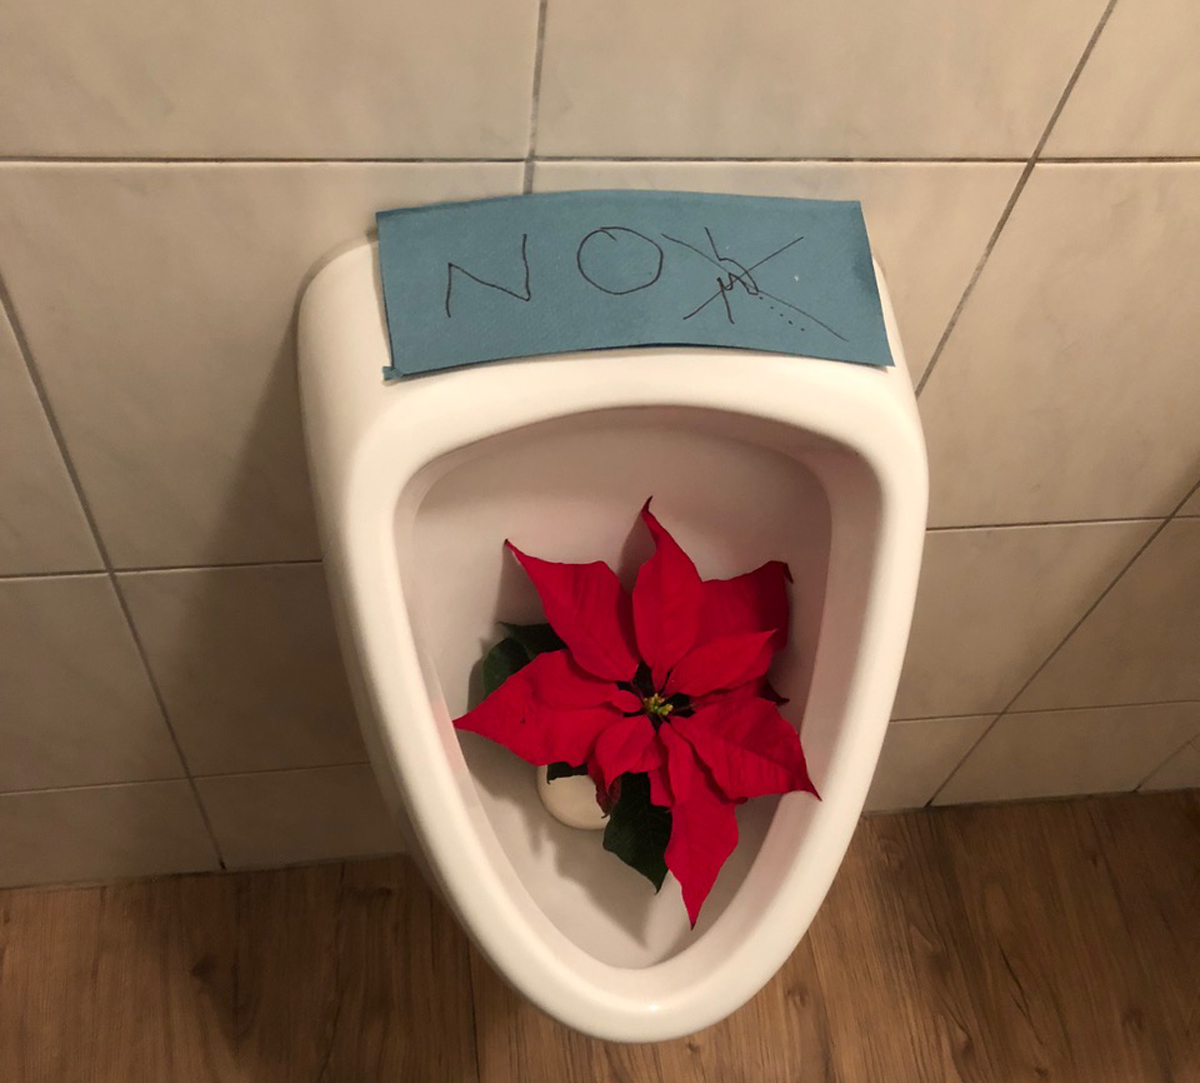 Ein stillgelegtes Urinal mit Weihnachtsstern in der Schüssel